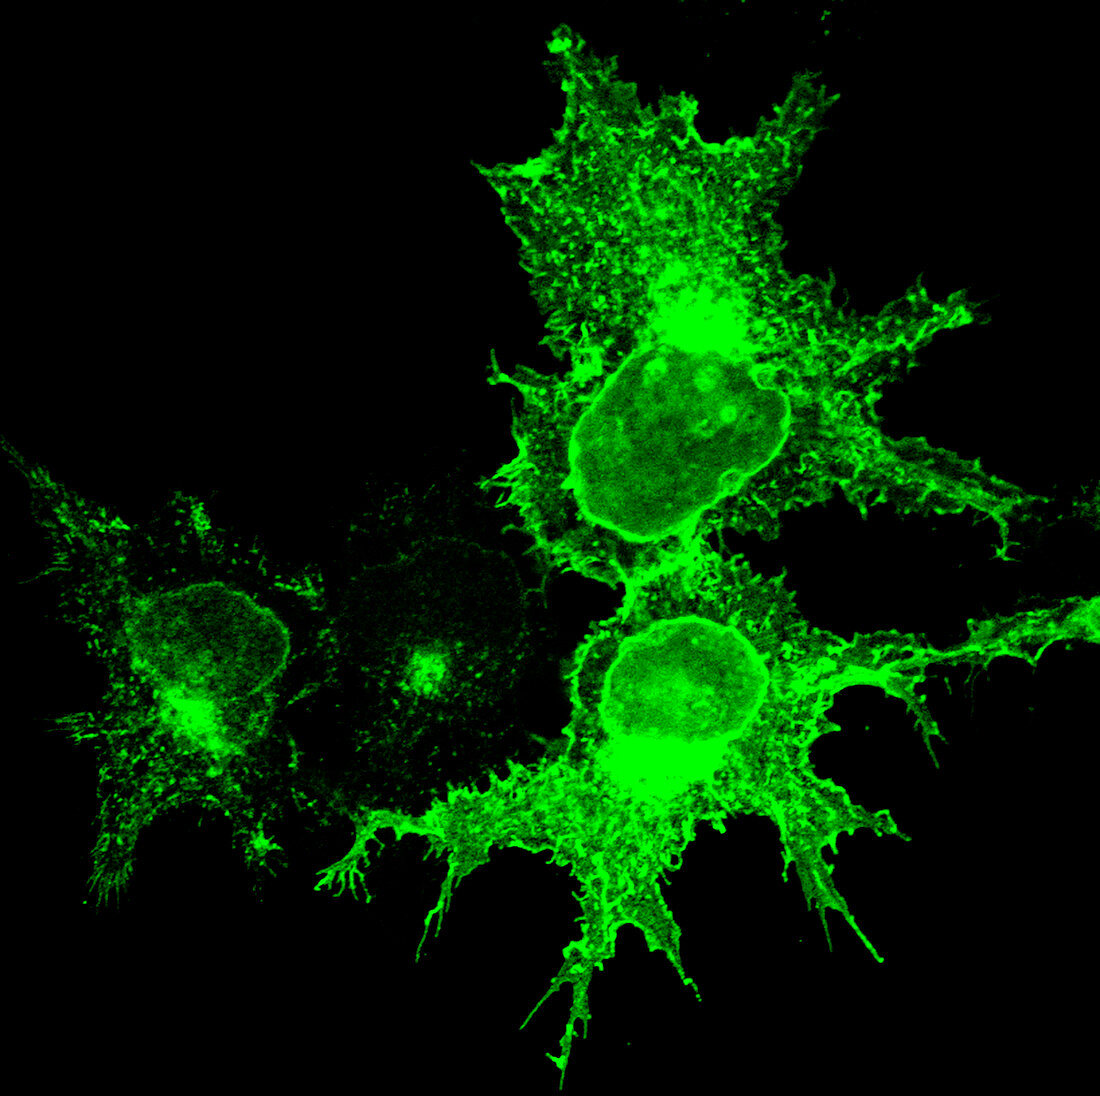 KIAA0319 protein,immunofluorescent image